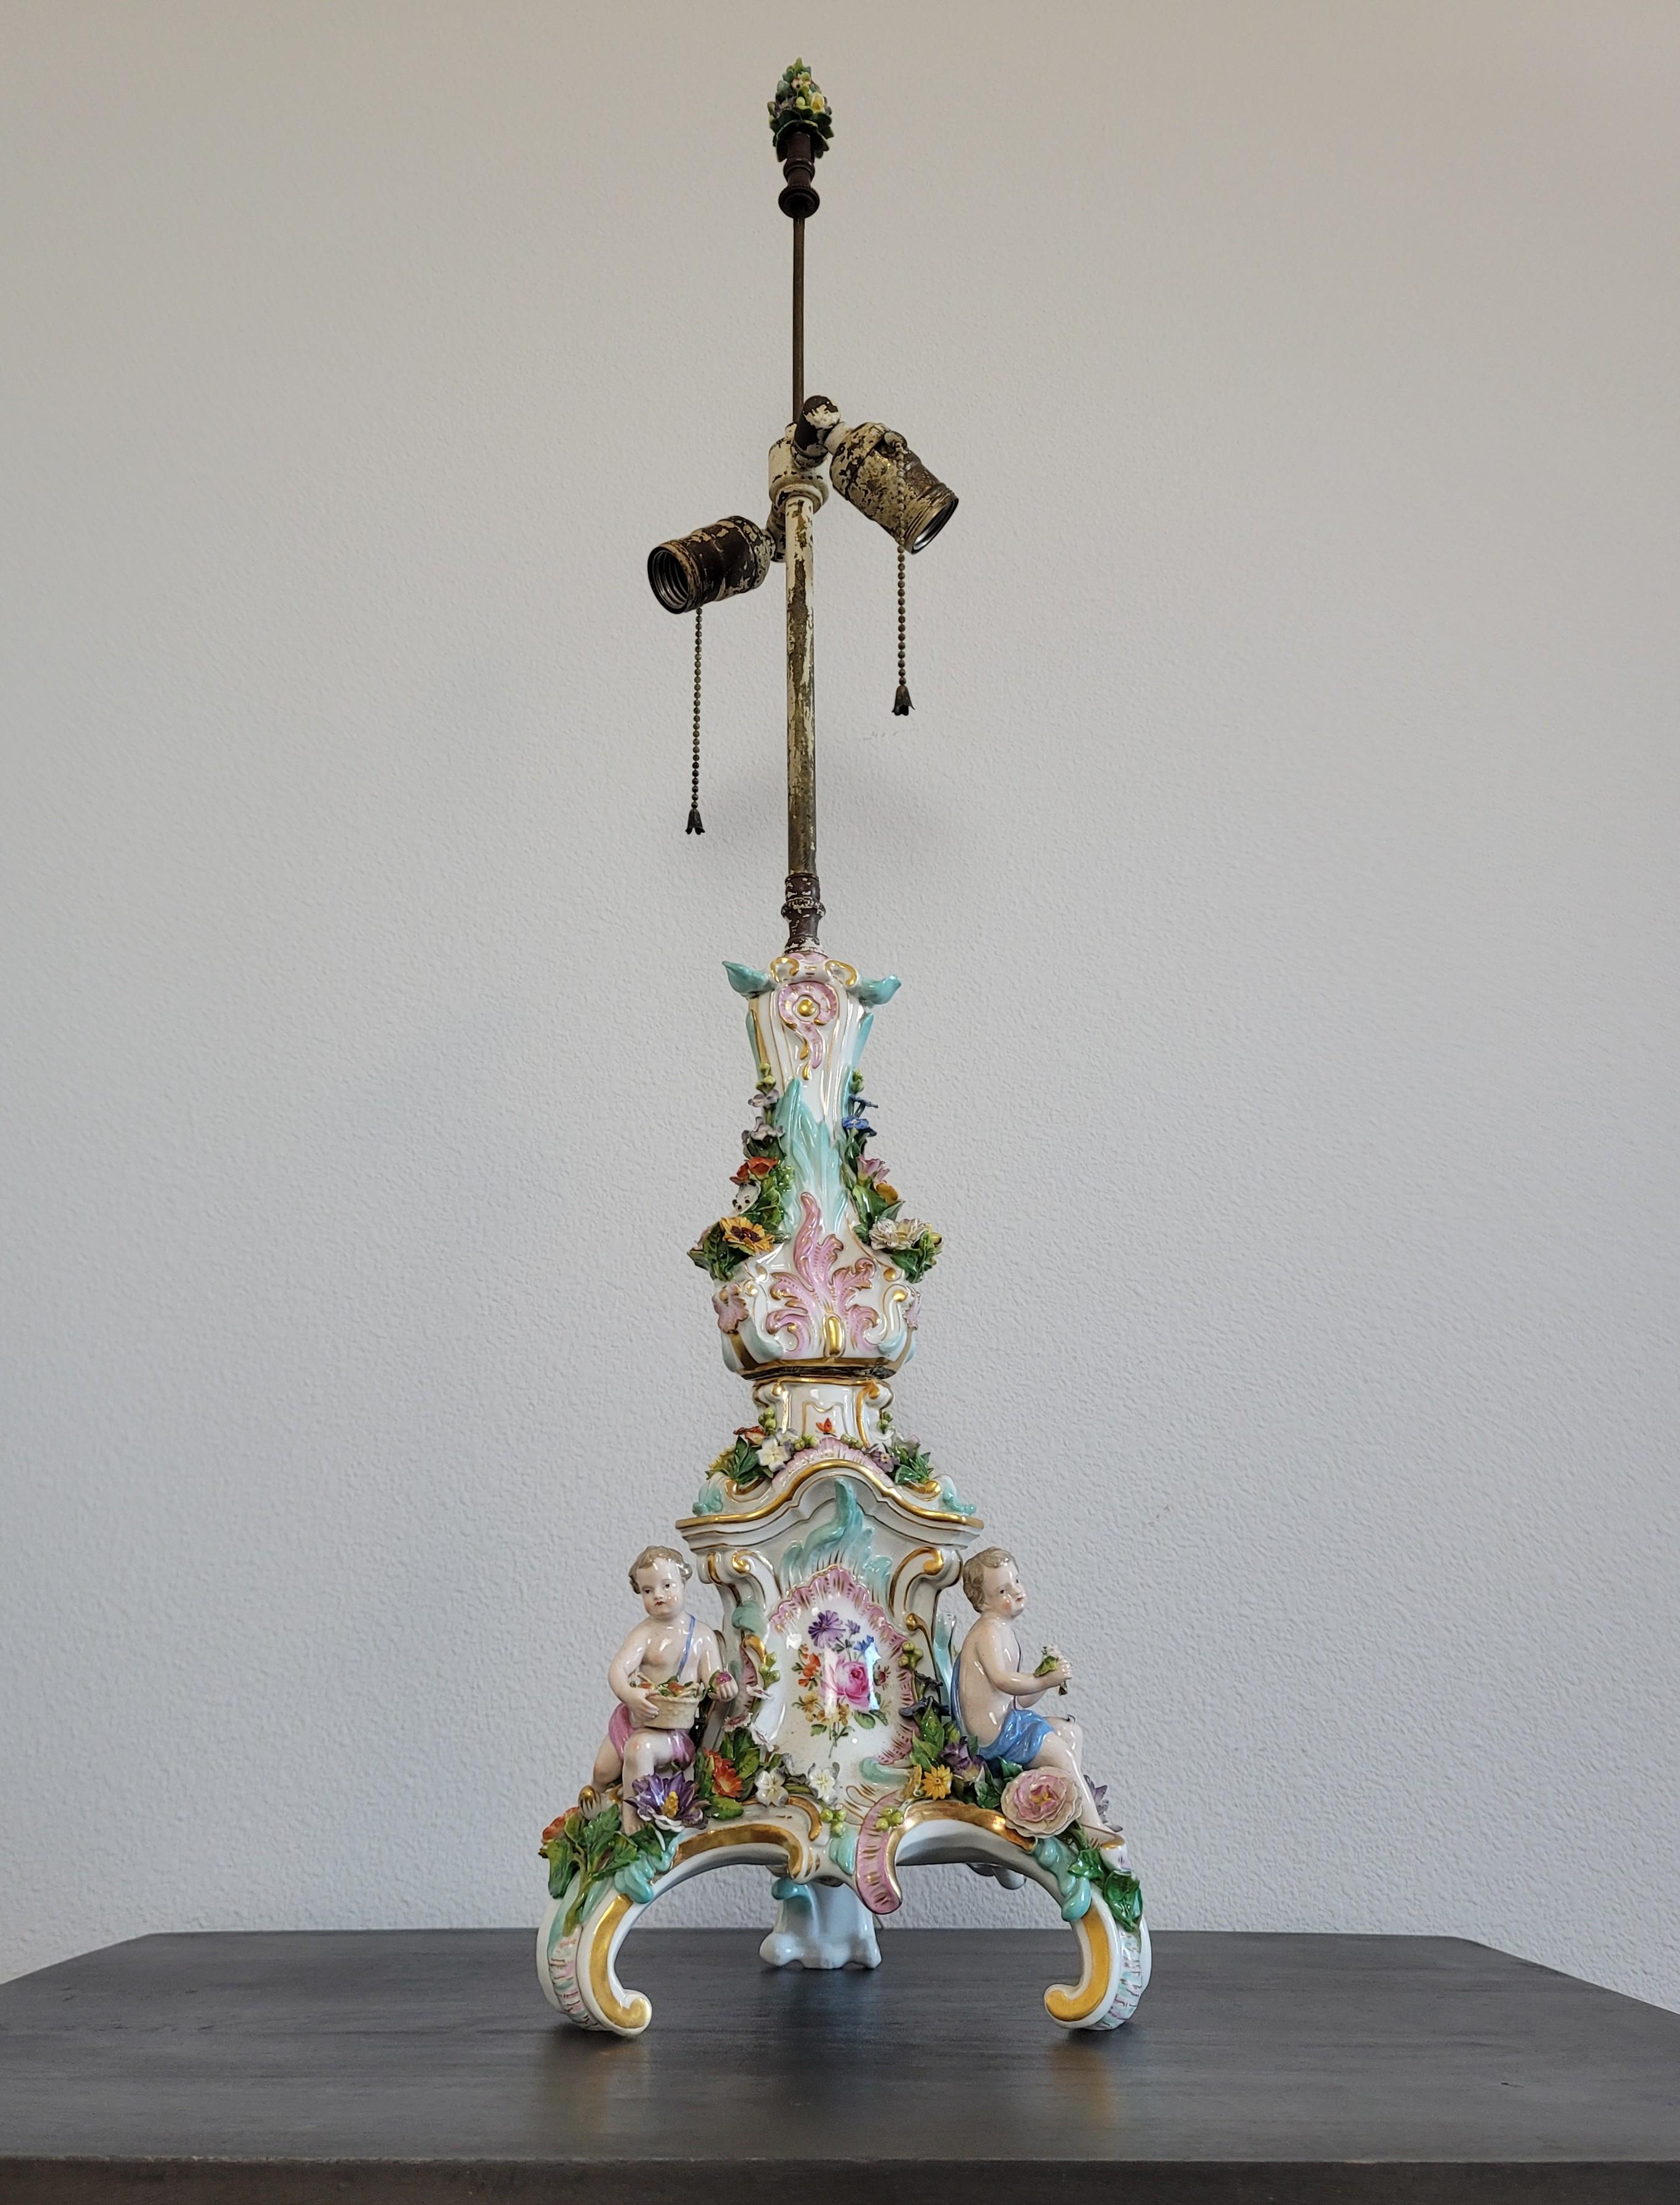 Superbe chandelier ancien, datant des années 1880, en porcelaine de Dresde, incrusté de fleurs - chandelier monté comme une lampe. 

Fabriqué et peint à la main en Allemagne à la fin du 19e siècle, développé par Ernst August Leuteritz, ce vase est